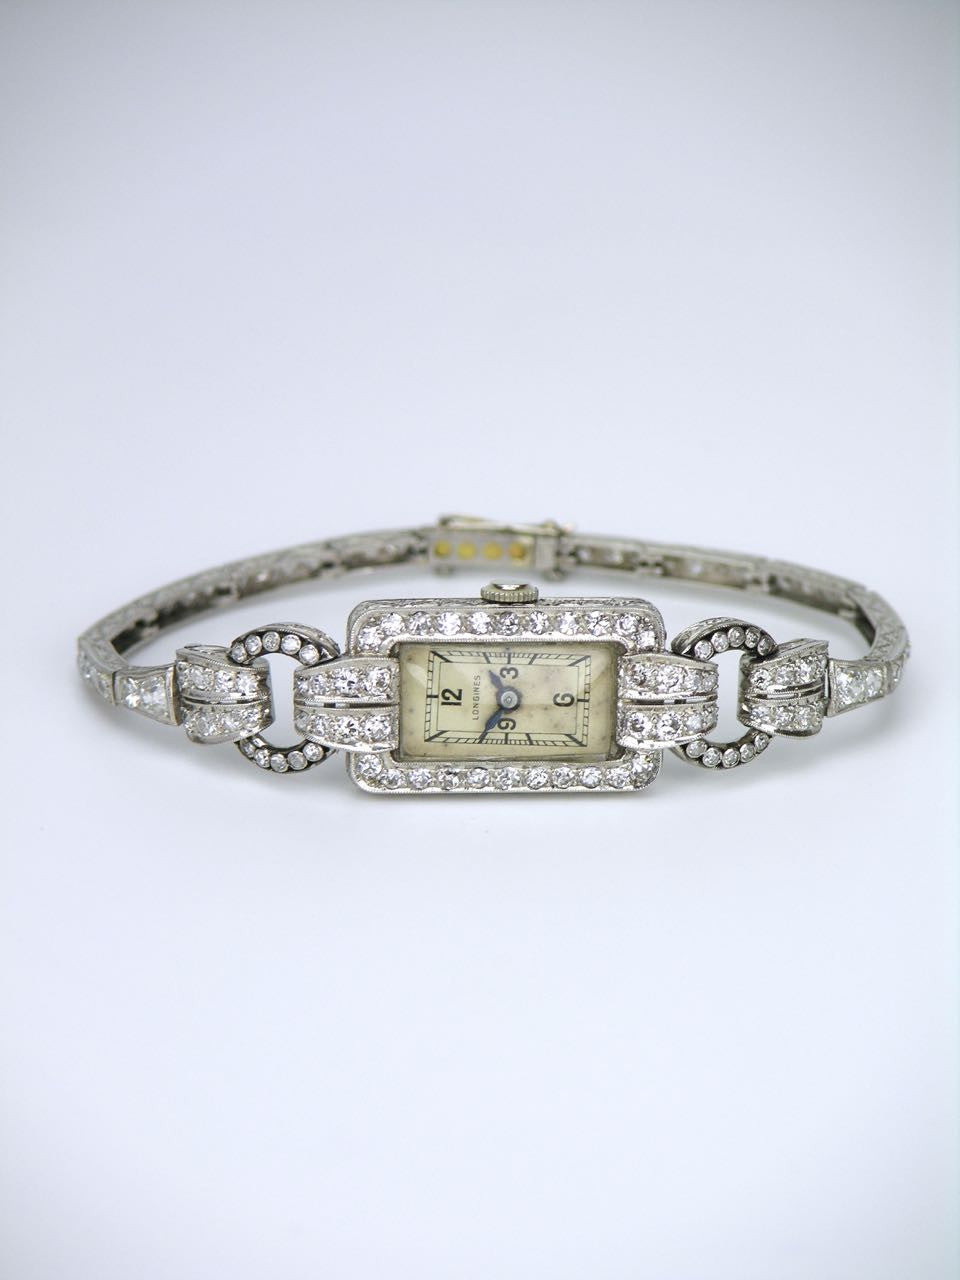 Antique Longines Art Deco platinum and diamond ladies watch